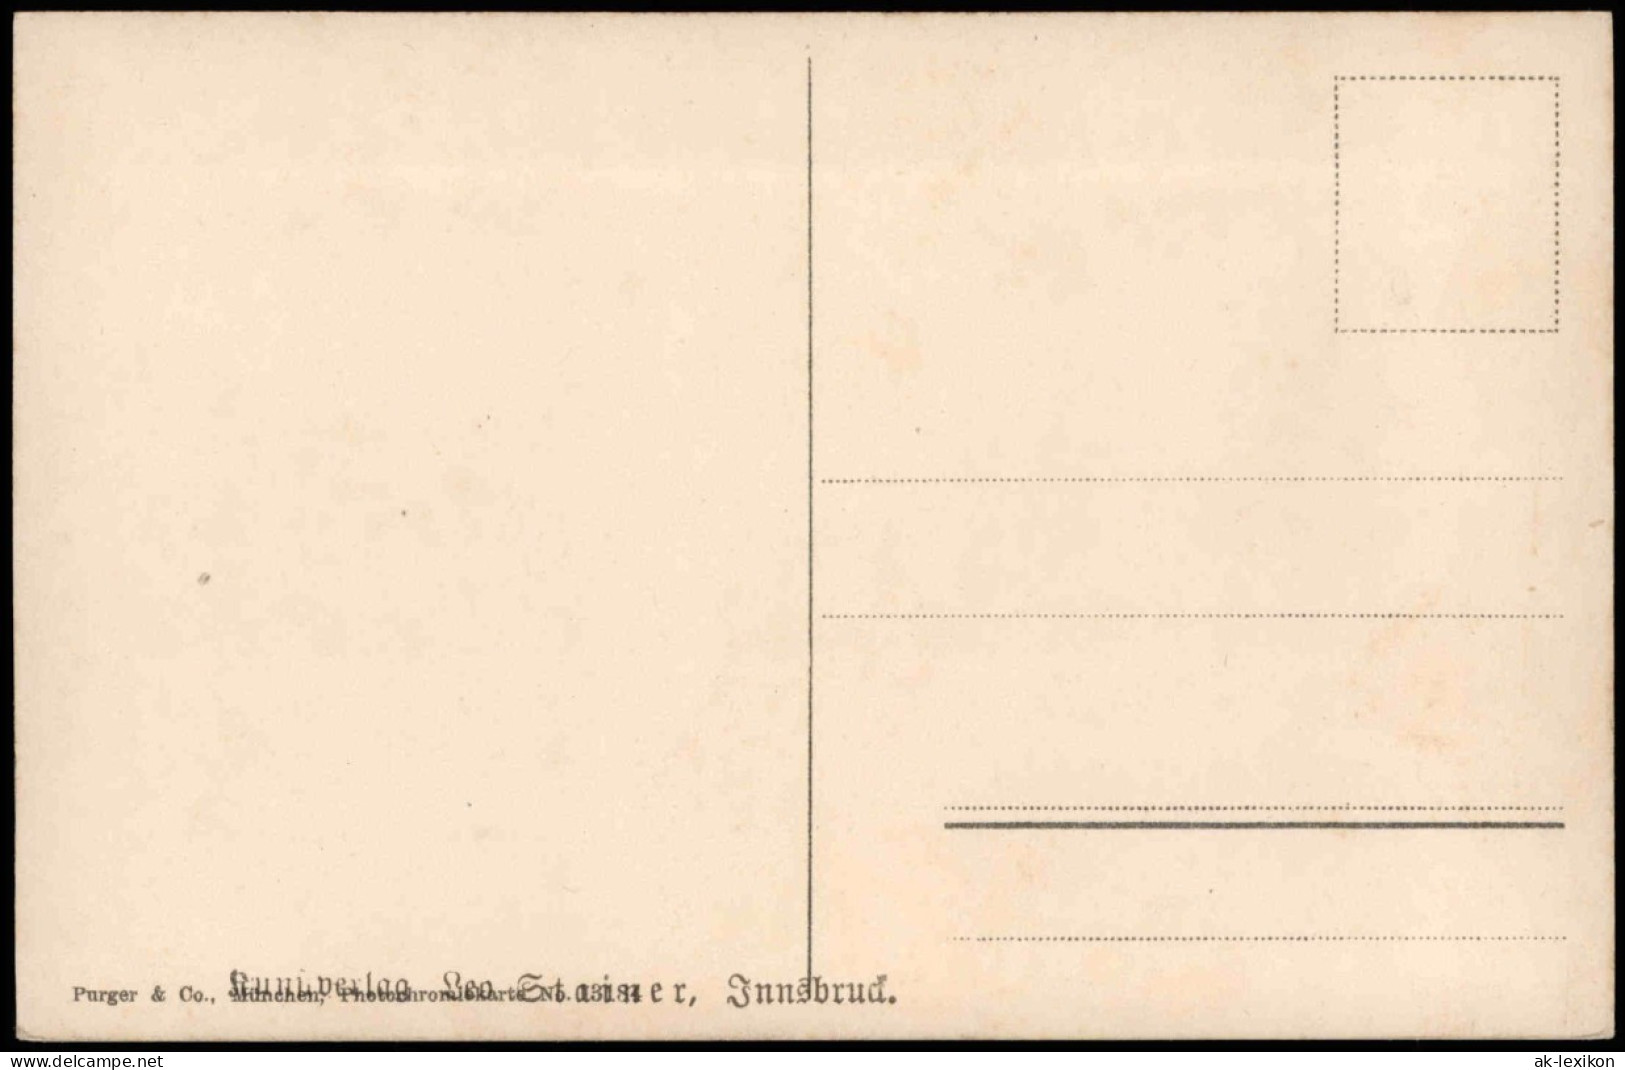 Ginzling-Mayrhofen Berlinerhütte (2057 M) D. A. V. S. Berlin 1910 - Altri & Non Classificati